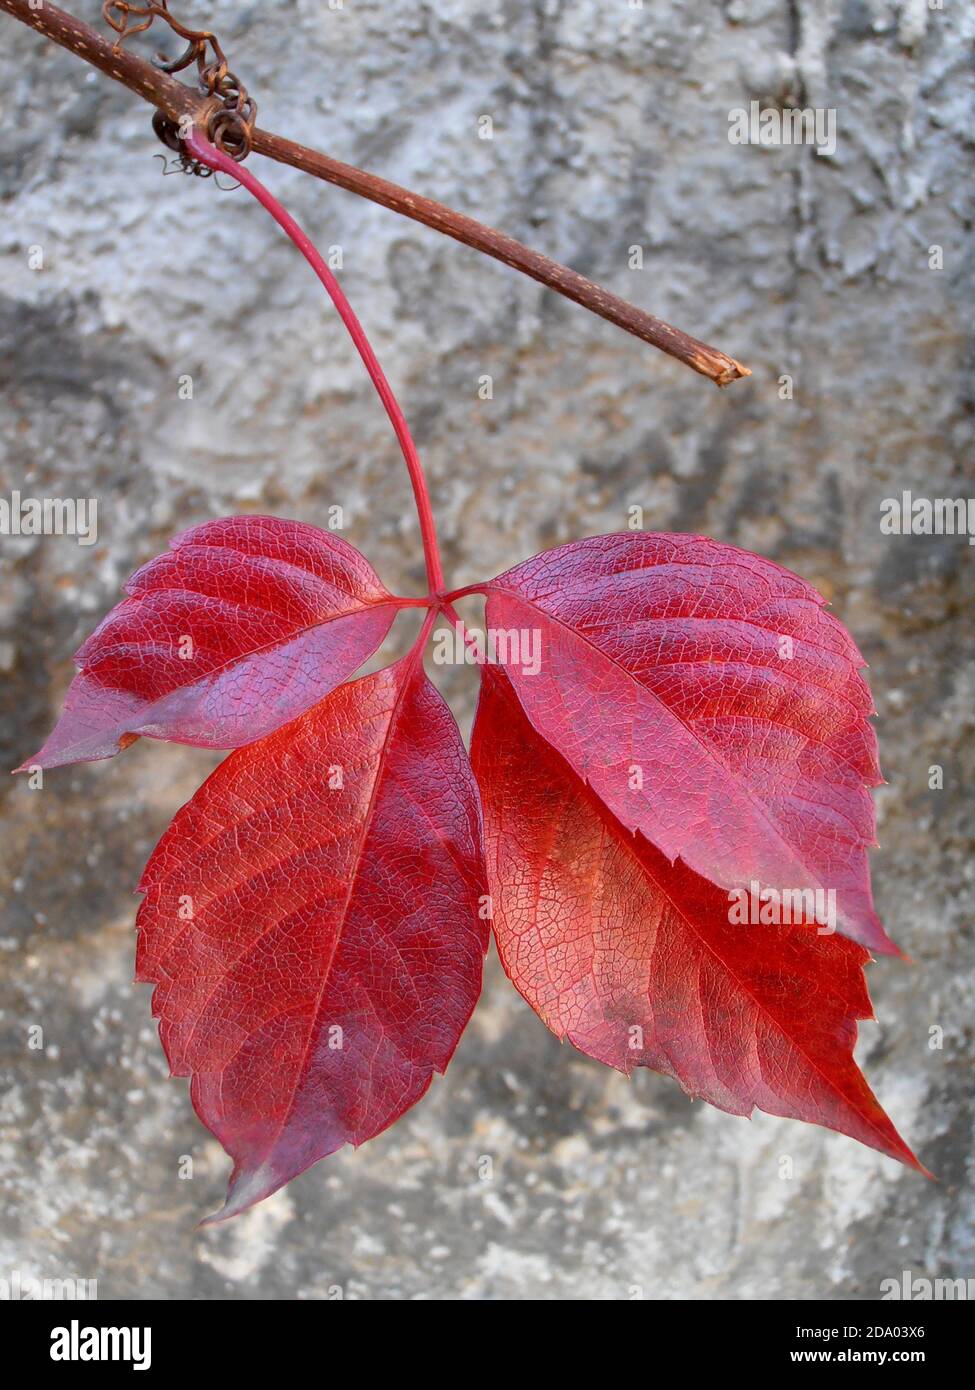 Rote Blätter mit alten Wandhintergrund, rote Blätter Makro, Herbstblätter, rote Blätter mit Mustern, Makrofotografie, Stock Bild Stockfoto